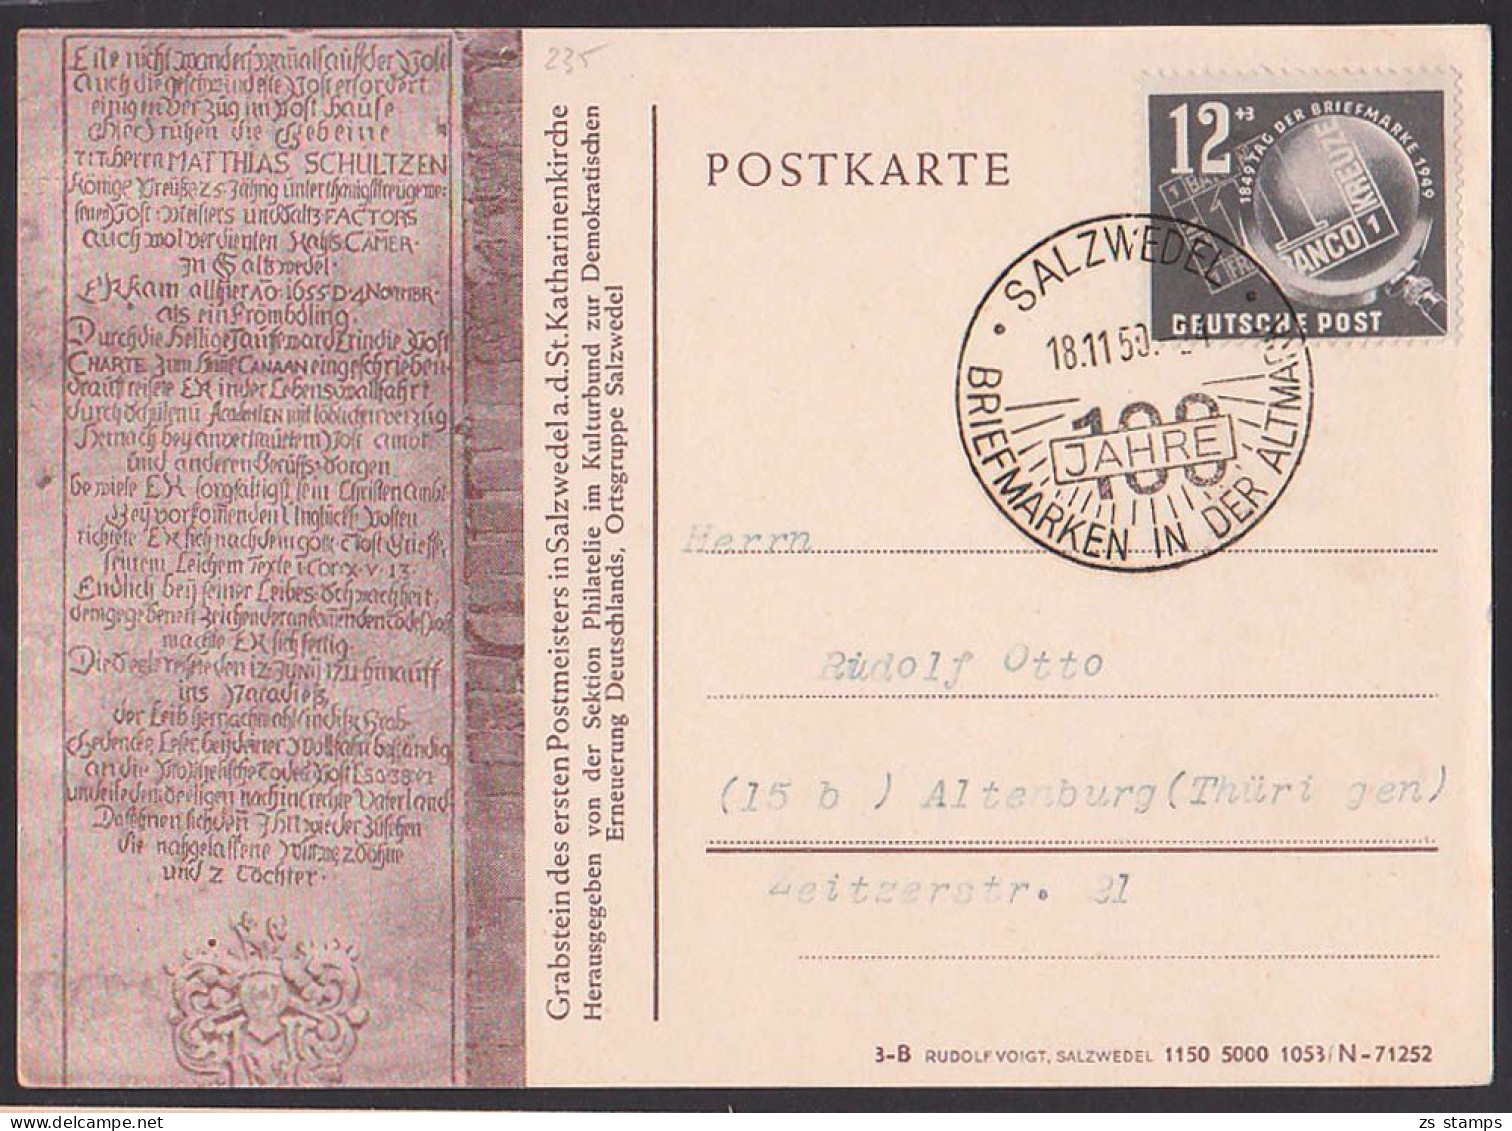 Salzwedel Postkarte Schmuckzudruck Grabstein Des Postmeisters SSt 18.11.50 DDR 235 - Covers & Documents